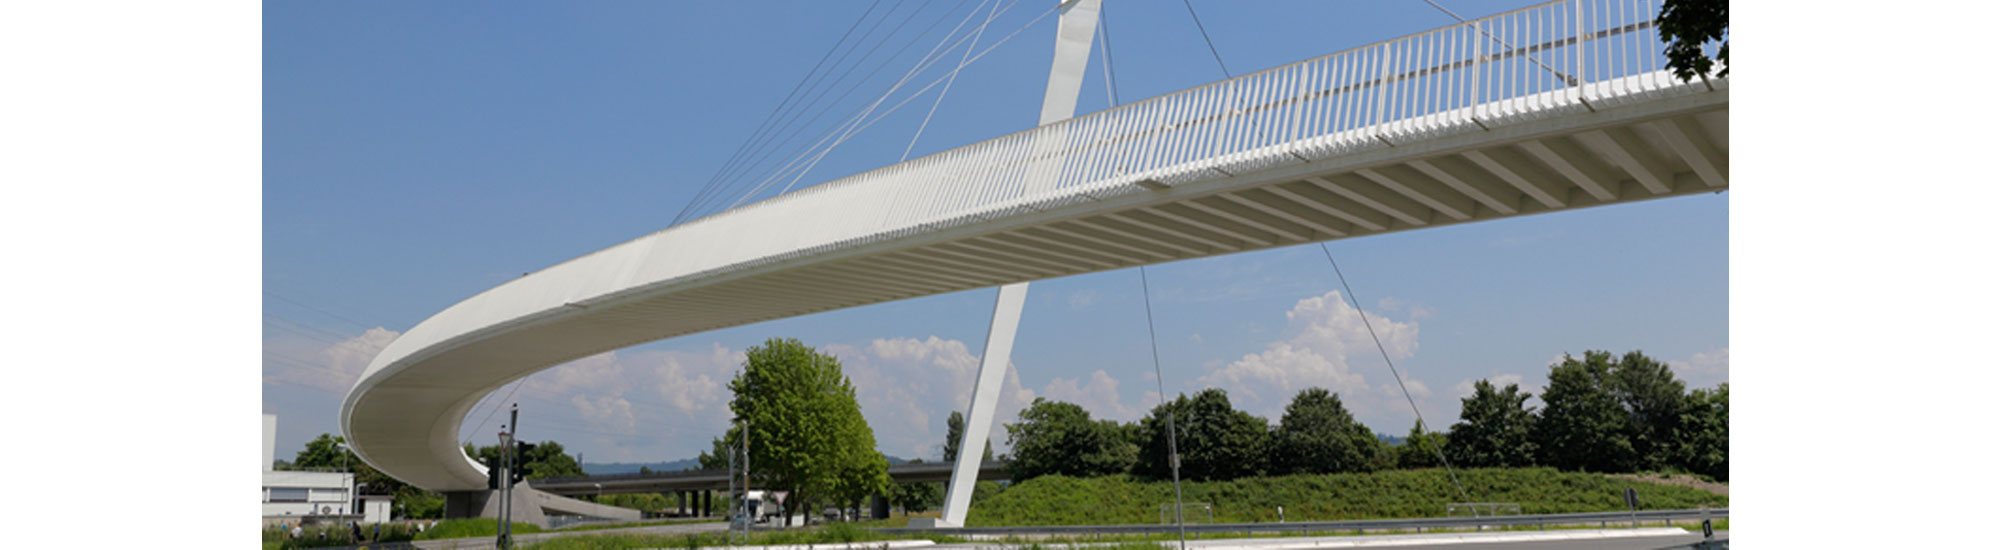 RS Ingenieure GmbH & Co. KG Ingenieurbüro für die Fachbereiche: Brückenbau, Hochbau- und Tragwerksplanung, Tiefbau und Städtebau